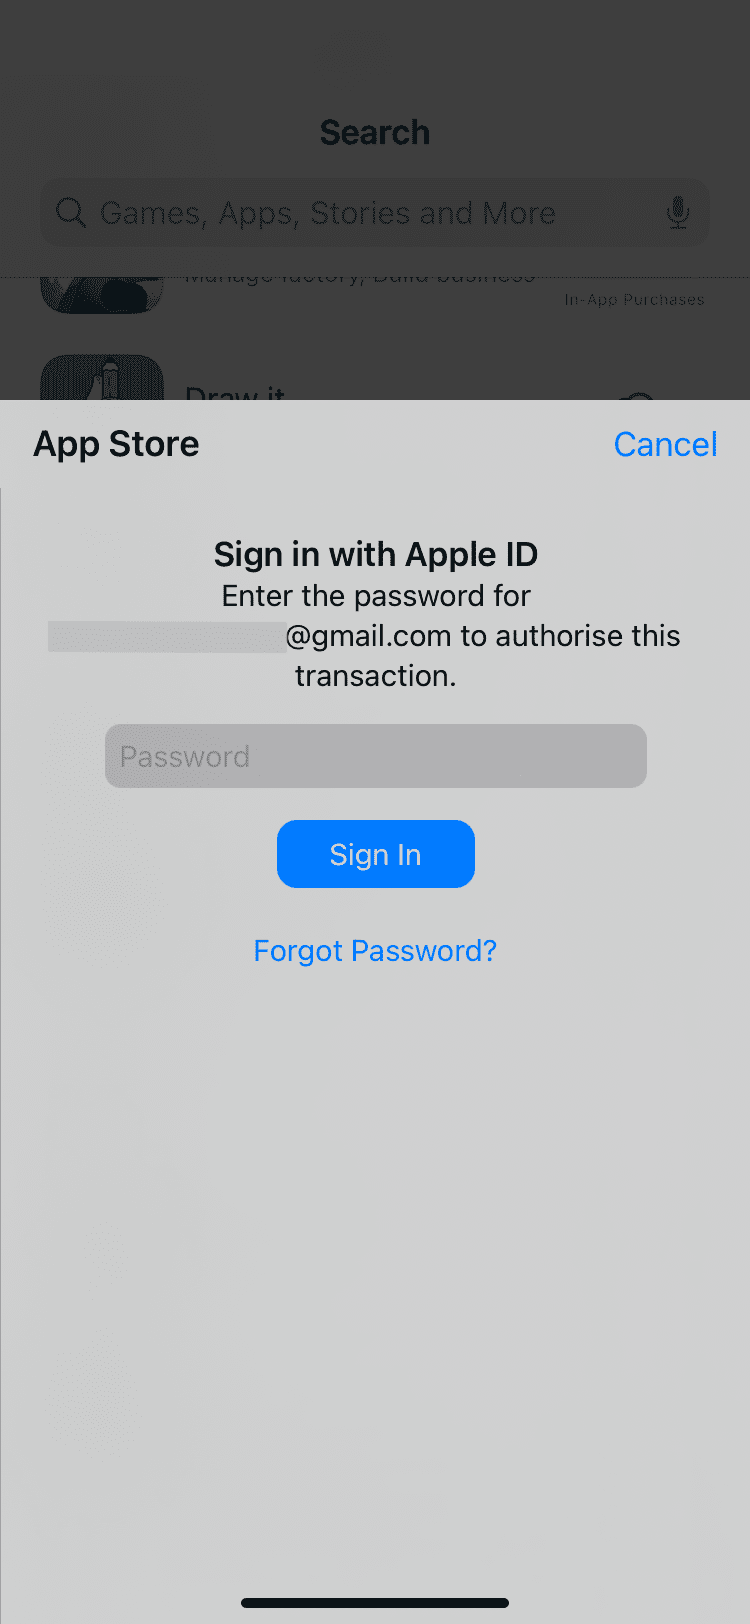 Inserisci la password per l'ID Apple per autorizzare questo avviso di transazione nell'App Store di iPhone